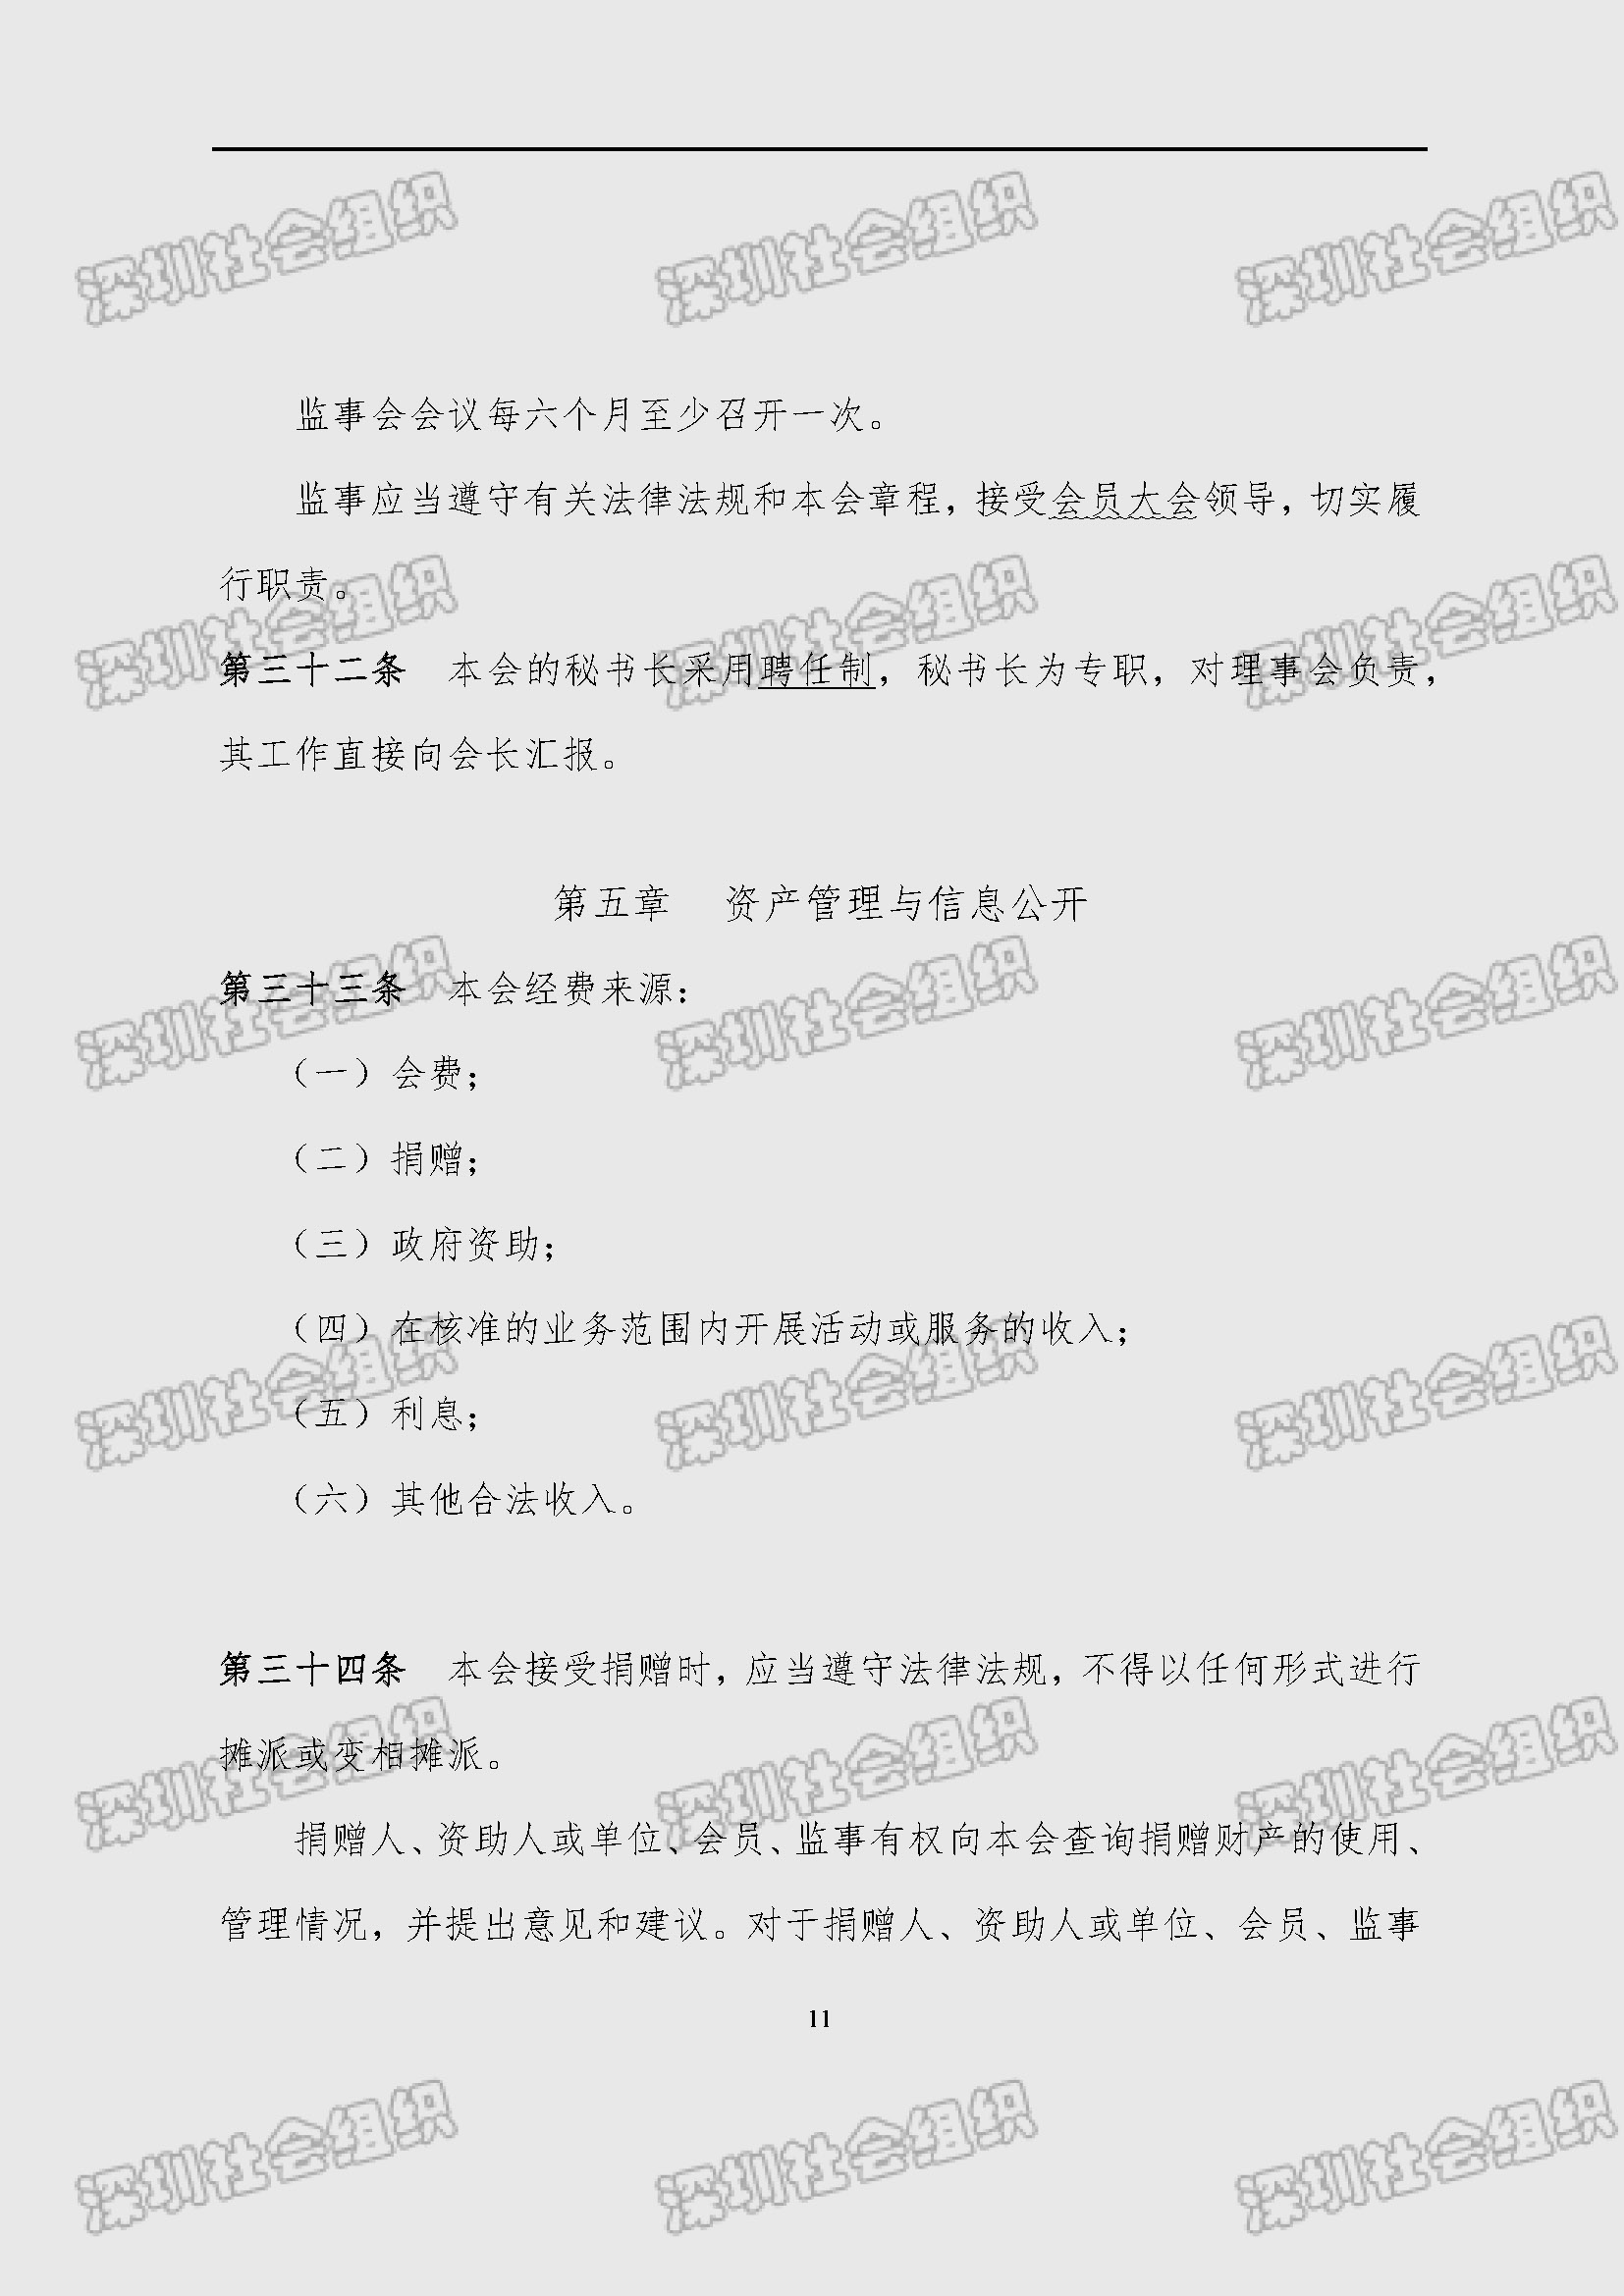 深圳市新材料行业协会章程_页面_11.jpg